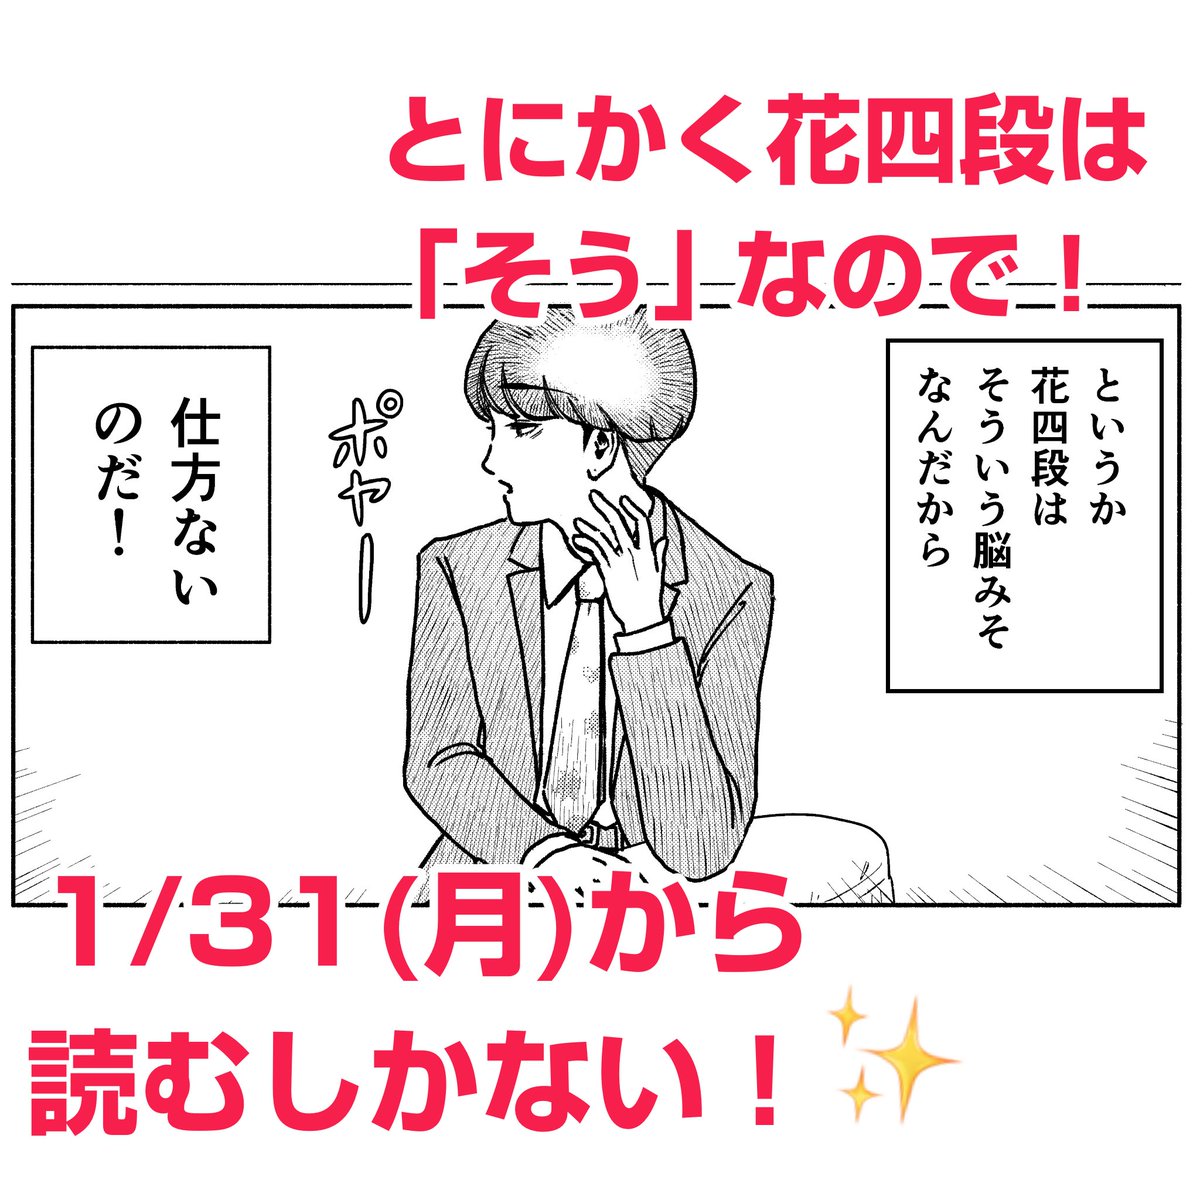 「花四段といっしょ」、第3話を終えたあと、1/31(月)から、いよいよ新作を投稿開始✨ 1日1ページ(2〜3ページの日も?)で、毎日投稿していきます🖋 予告画像の時点で全然将棋のこと考えてないけど、ど〜なっちゃうの!? #花四段といっしょ #将棋 #漫画 #shogi #漫画好きな人と繋がりたい